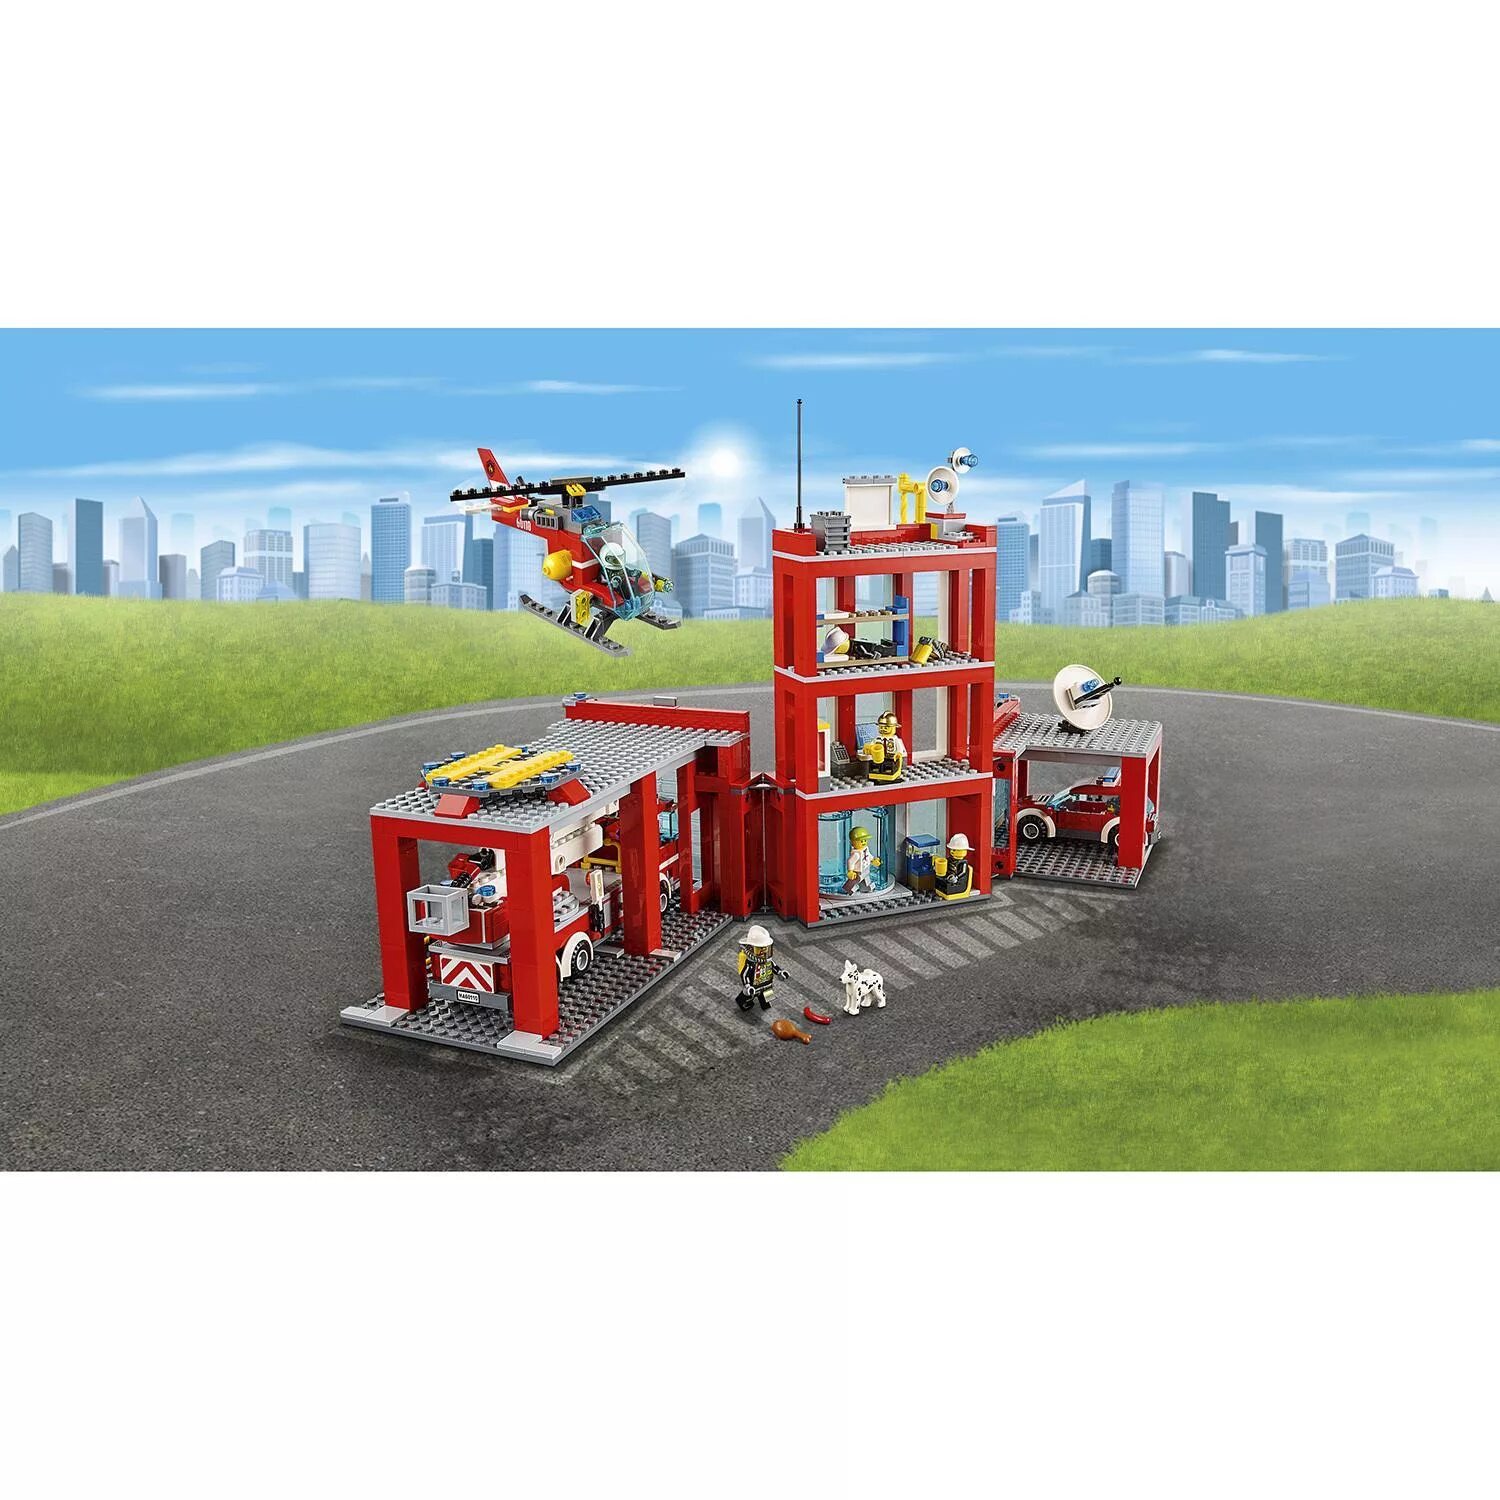 Сити пожарная. LEGO City пожарная станция 60110. LEGO City пожарная часть 60110. Лего Сити пожарная станция 60110. LEGO City Fire пожарная часть (60110).